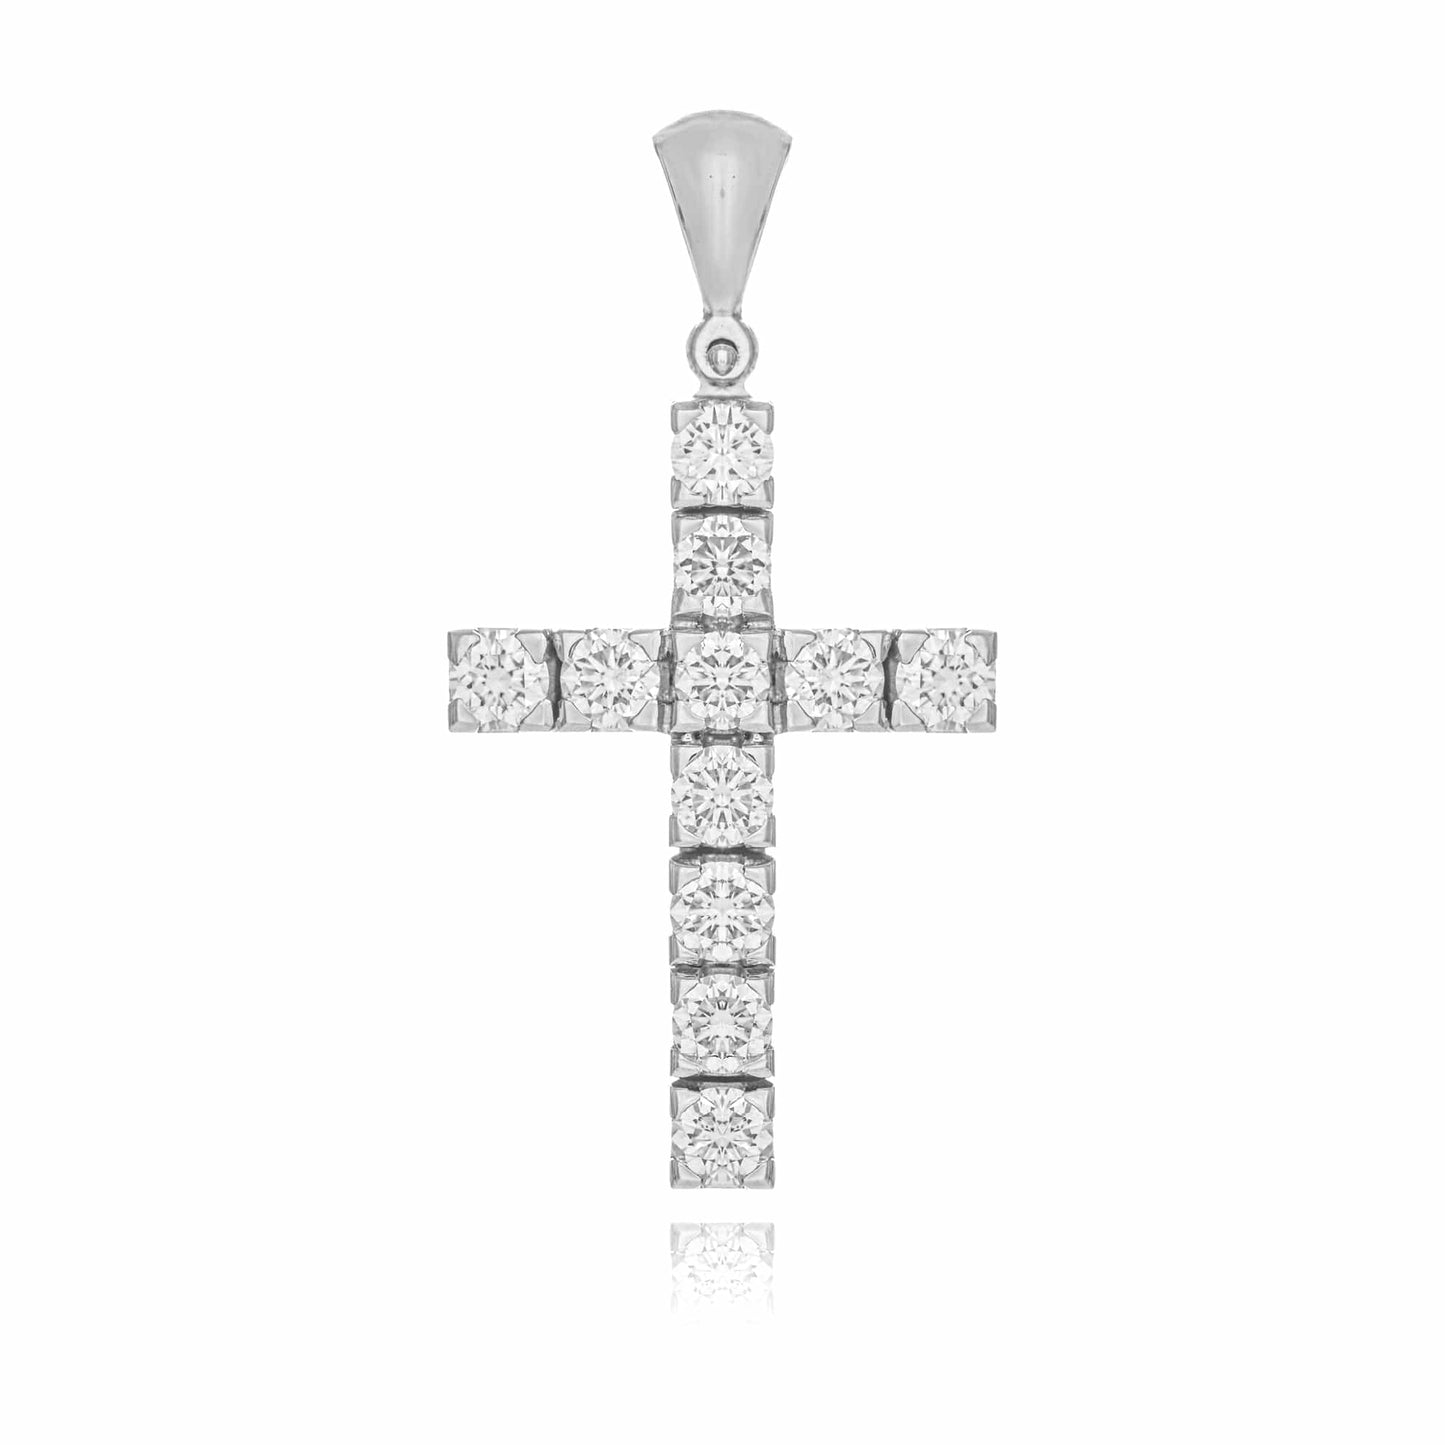 MONDO CATTOLICO Jewelry Cm 2.3 (0.90 in) / Cm 1.5 (0.59 in) Cross in White Gold and Diamonds